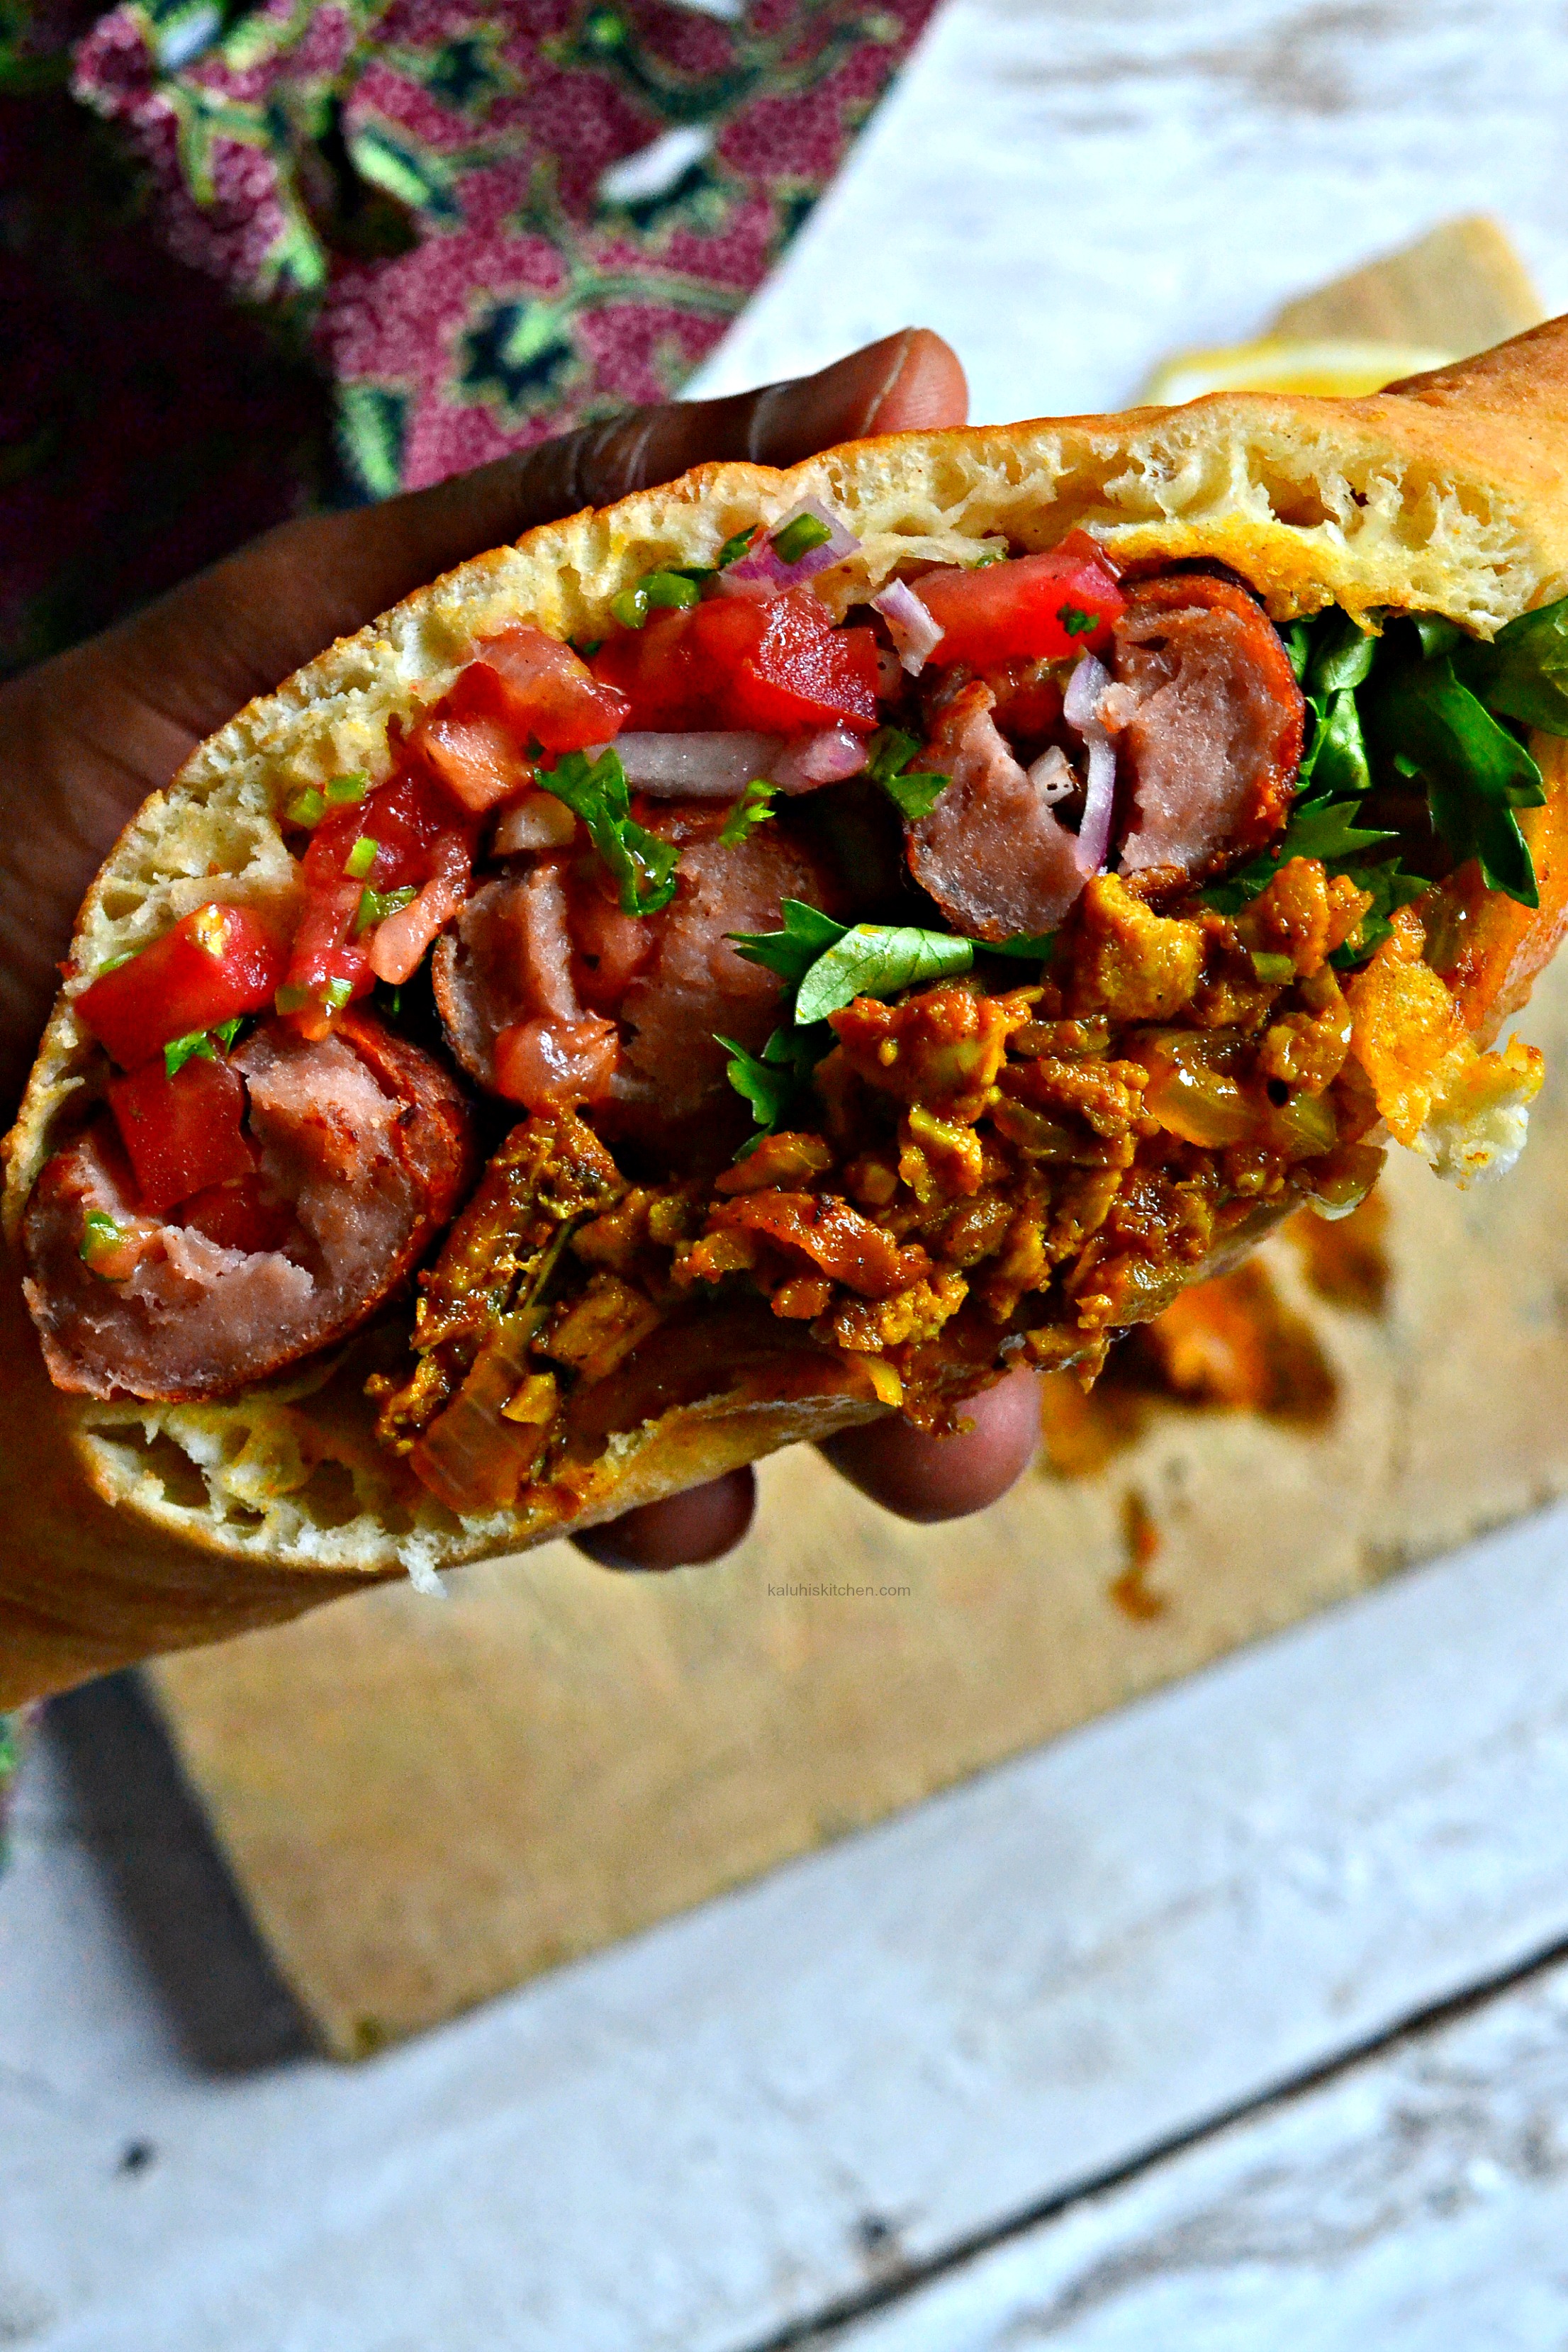 kenyan-street-food_kenyan-food_pasua_combi_sausage-pasua_kaluhiskitchen-com